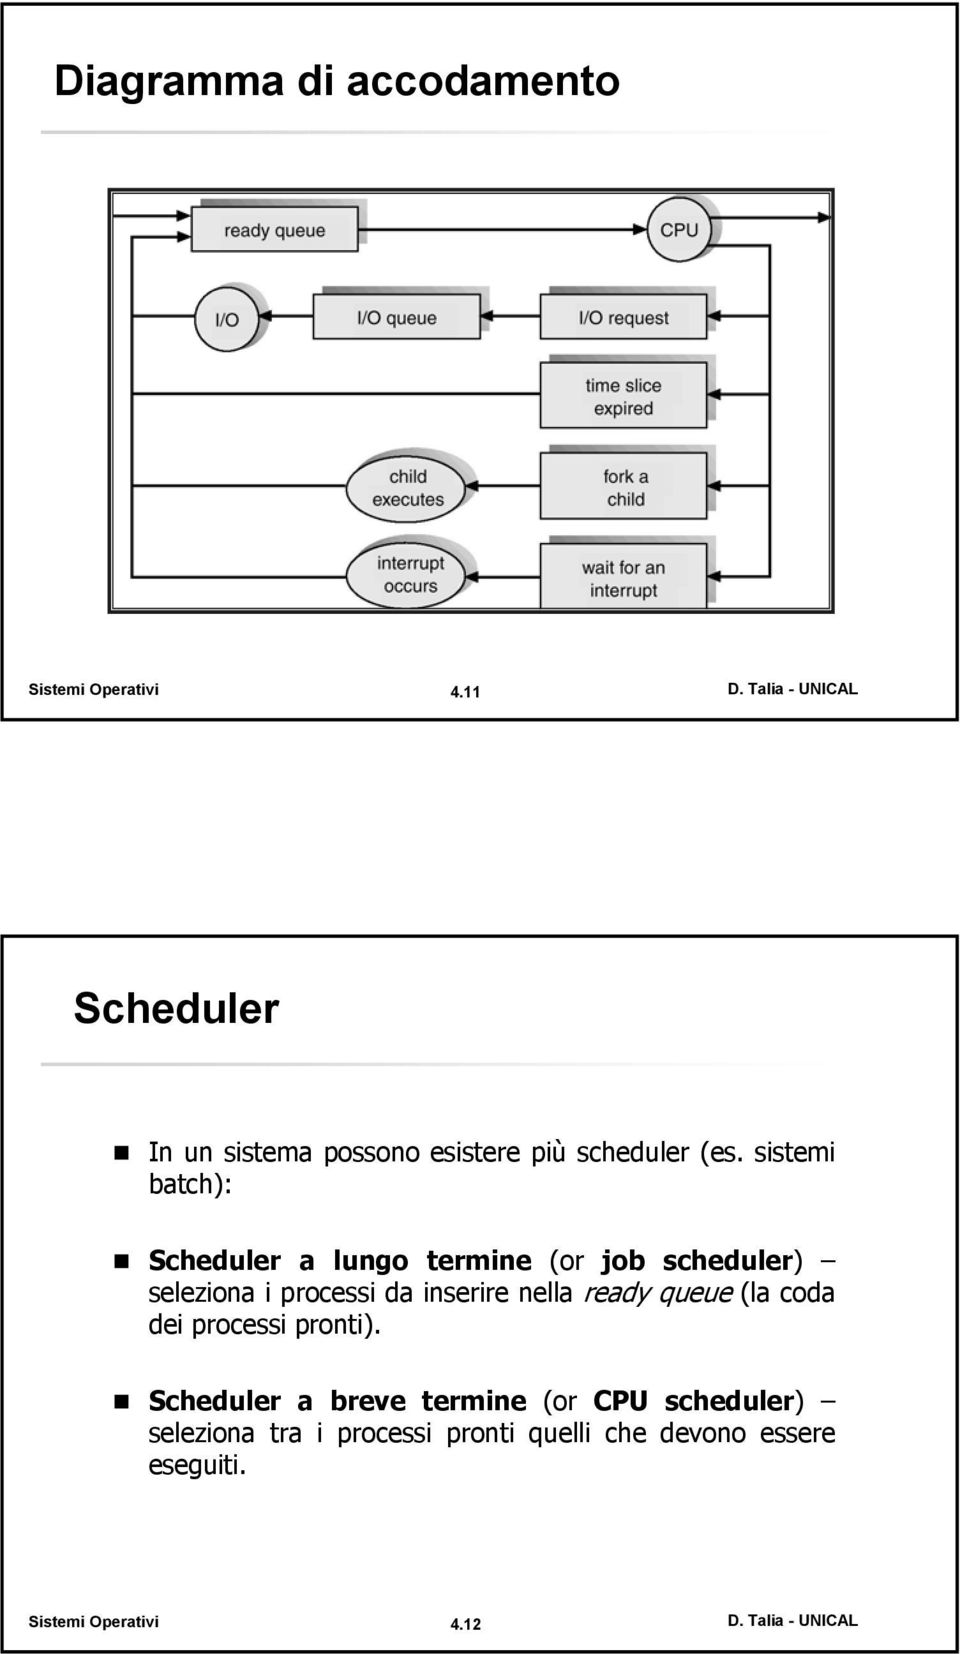 sistemi batch): Scheduler a lungo termine (or job scheduler) seleziona i processi da